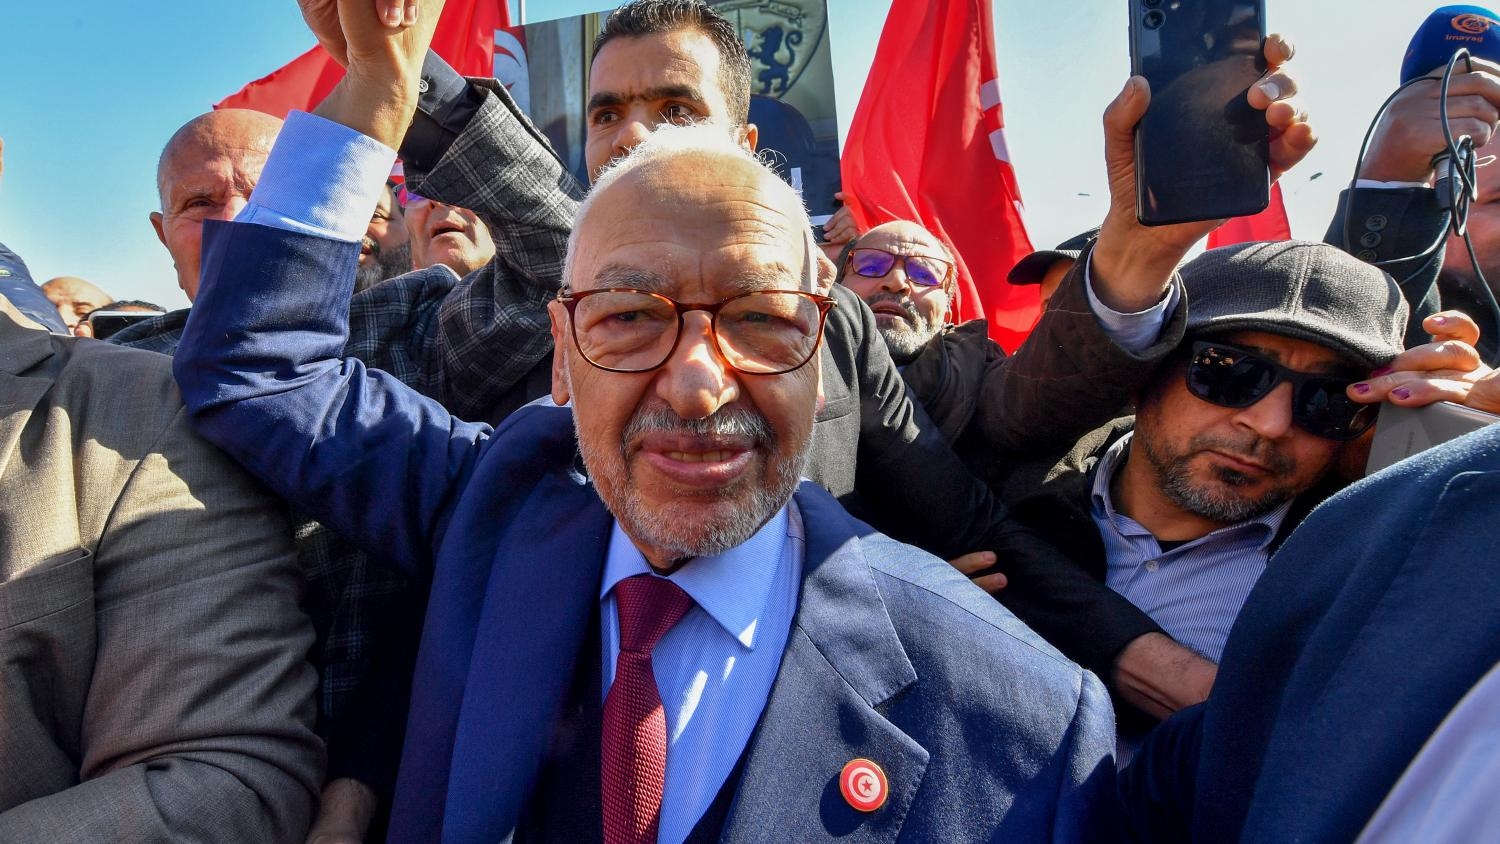 Le ministère tunisien de l’Intérieur a interdit par décret à Ennahdha de tenir des réunions dans le pays, tandis que le Front du salut national (FSN), un autre groupe d’opposition, a été interdit de réunion à Tunis (AFP)